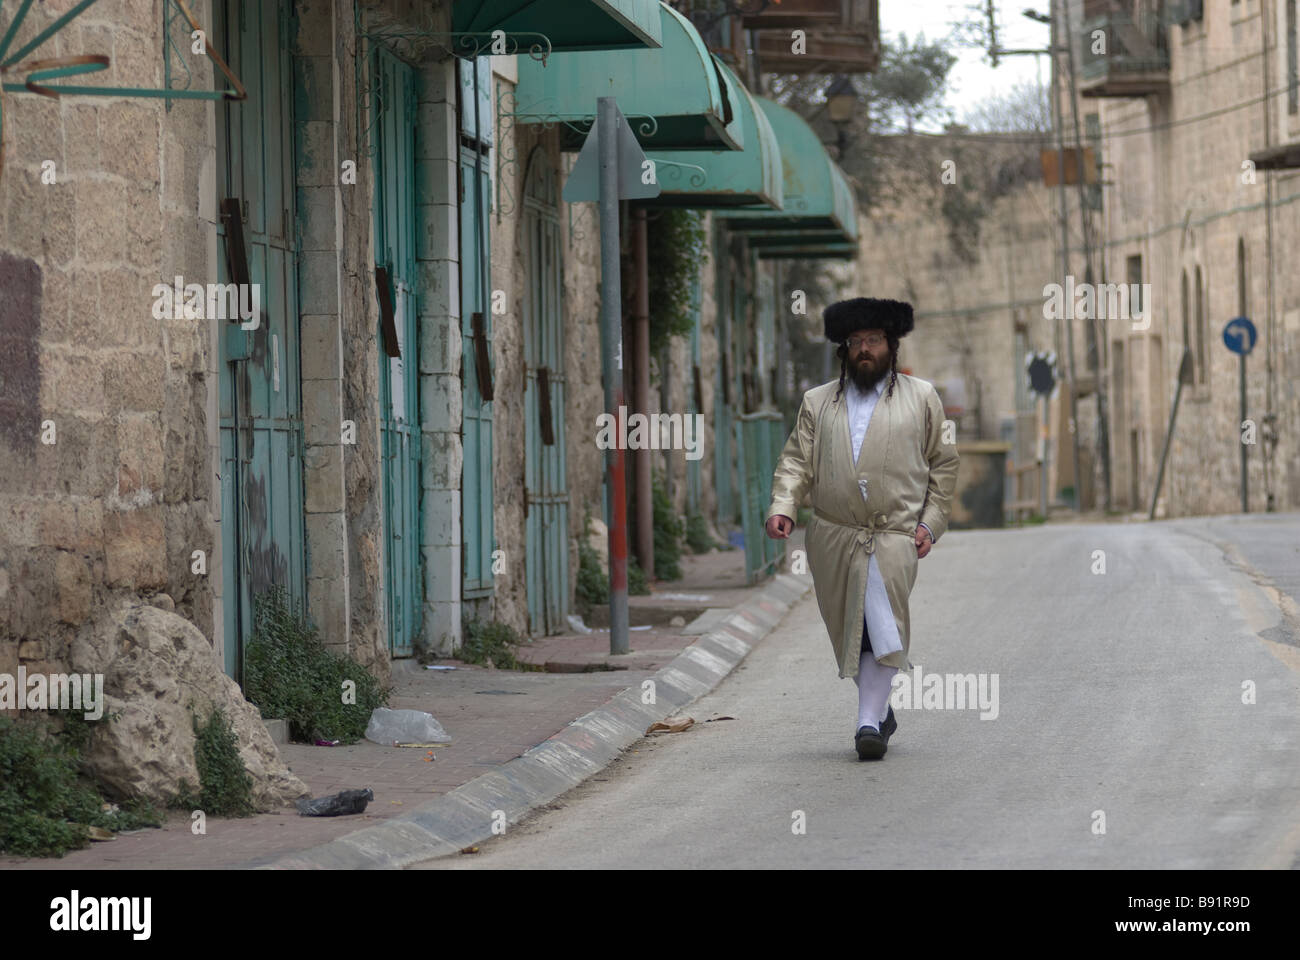 An Ultra orthodox Jew wears a shtreimel fur hat in Mea Shearim neighborhood, an ultra-Orthodox enclave in West Jerusalem Israel Stock Photo